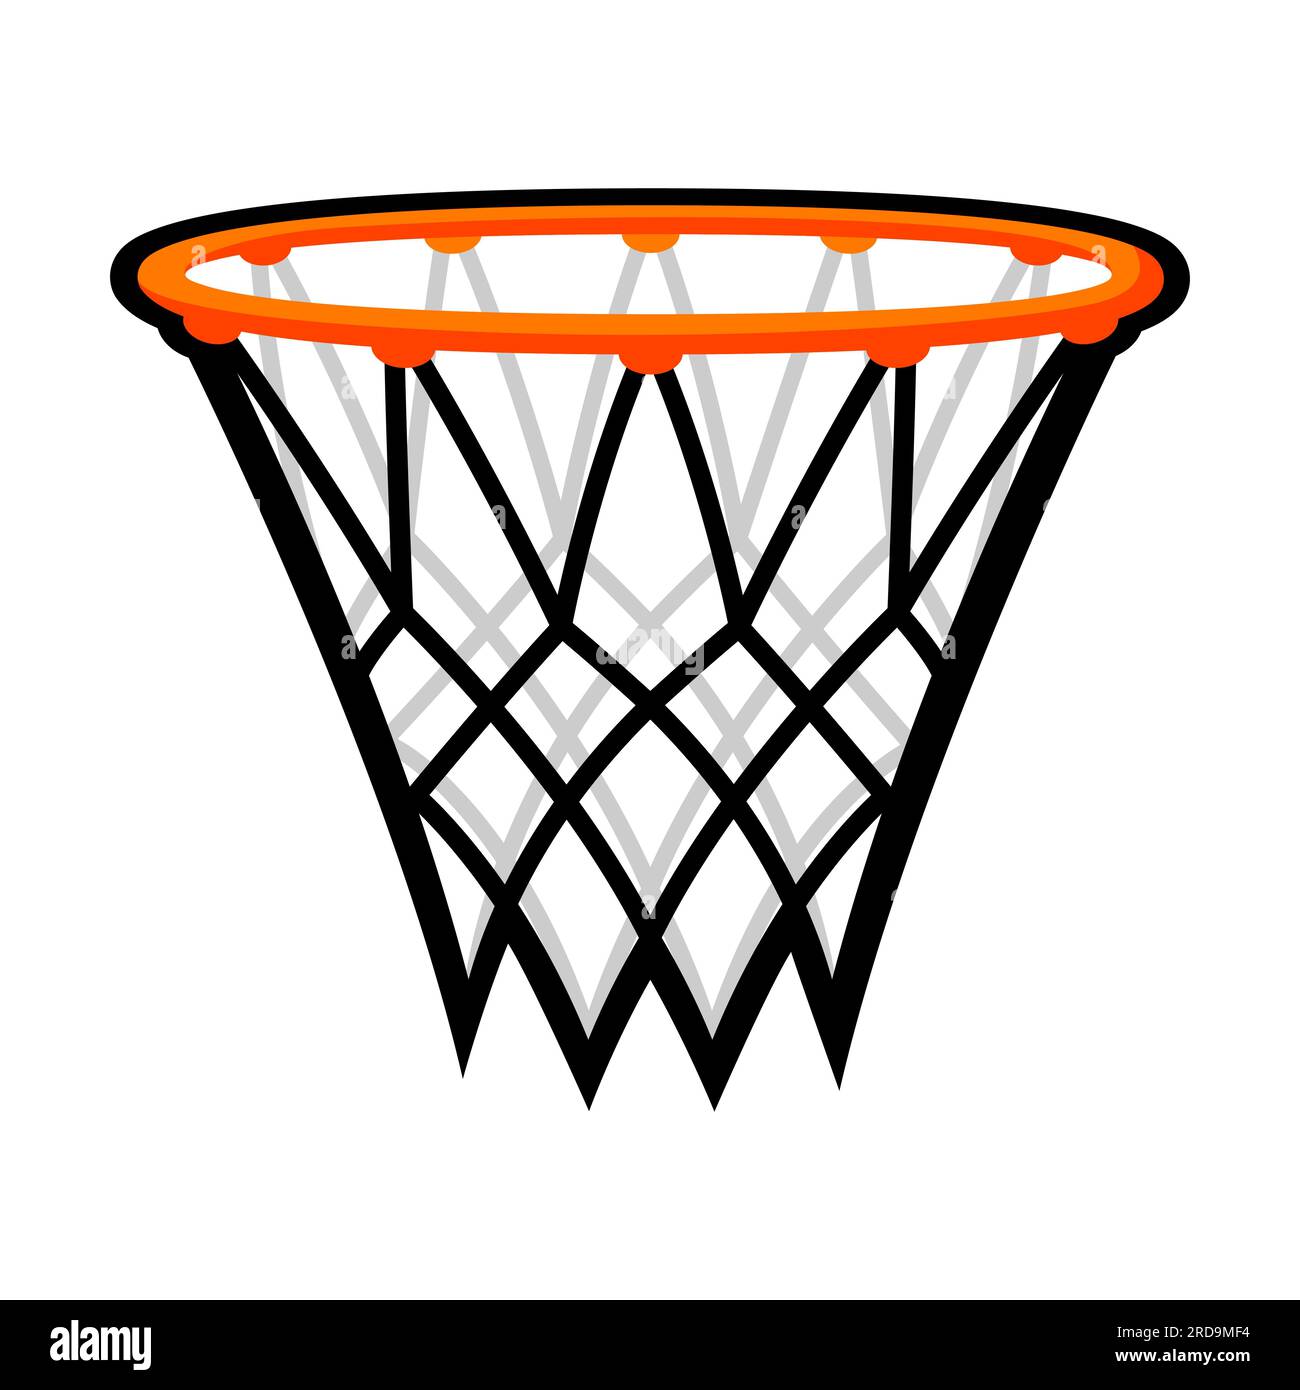 Illustrazione del canestro da basket. Oggetto o simbolo del club sportivo. Illustrazione Vettoriale